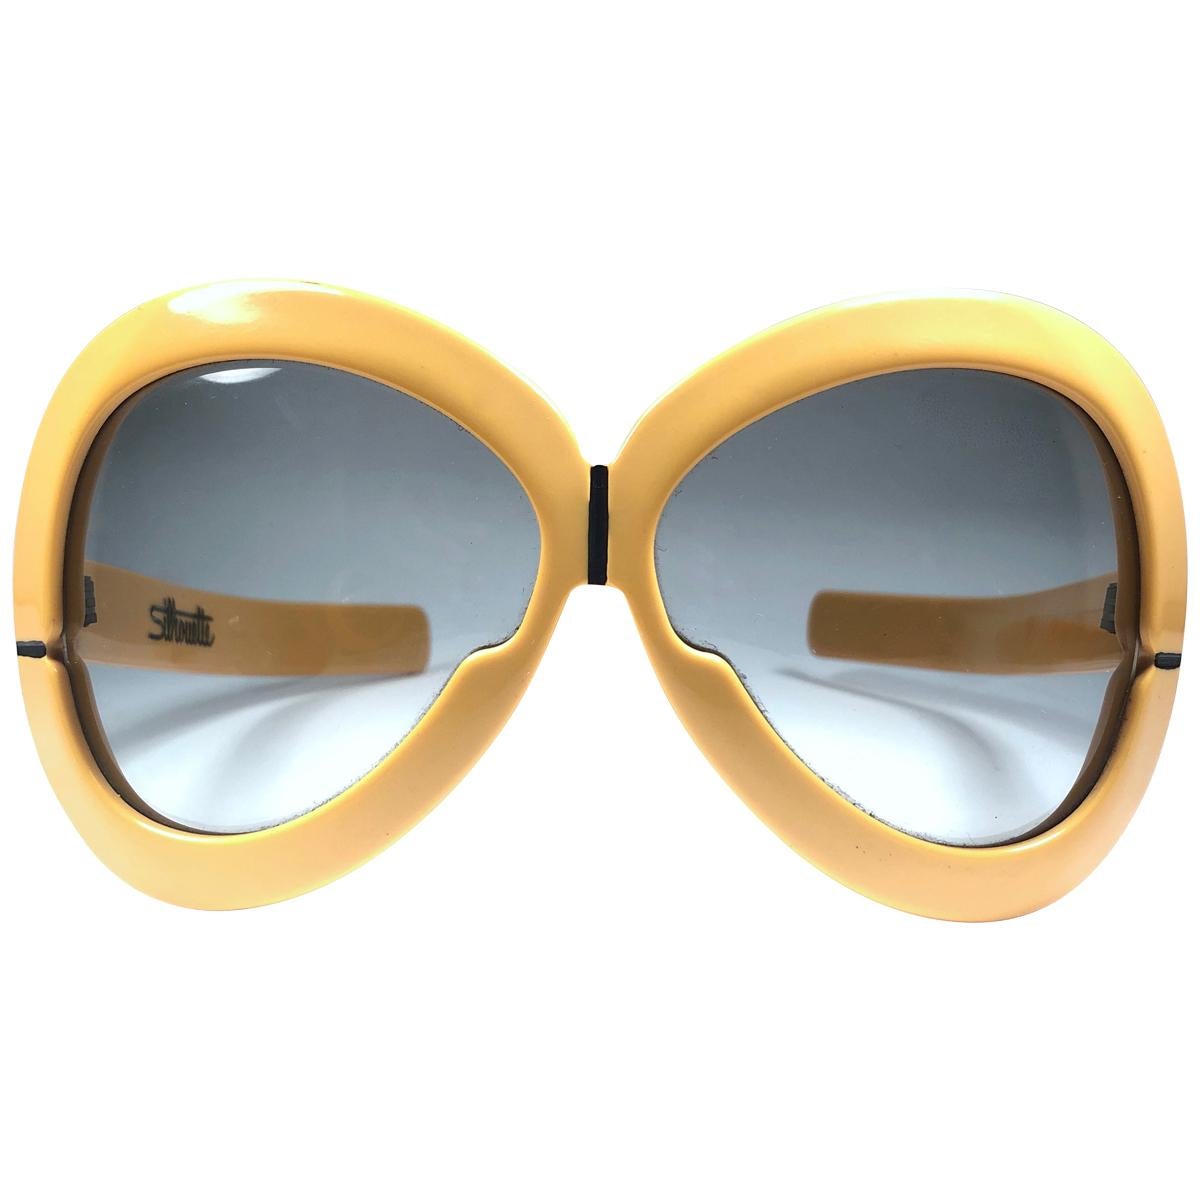 New Vintage Rare Silhouette Futura 561 Ochre Collector Item 1970 Sunglasses 